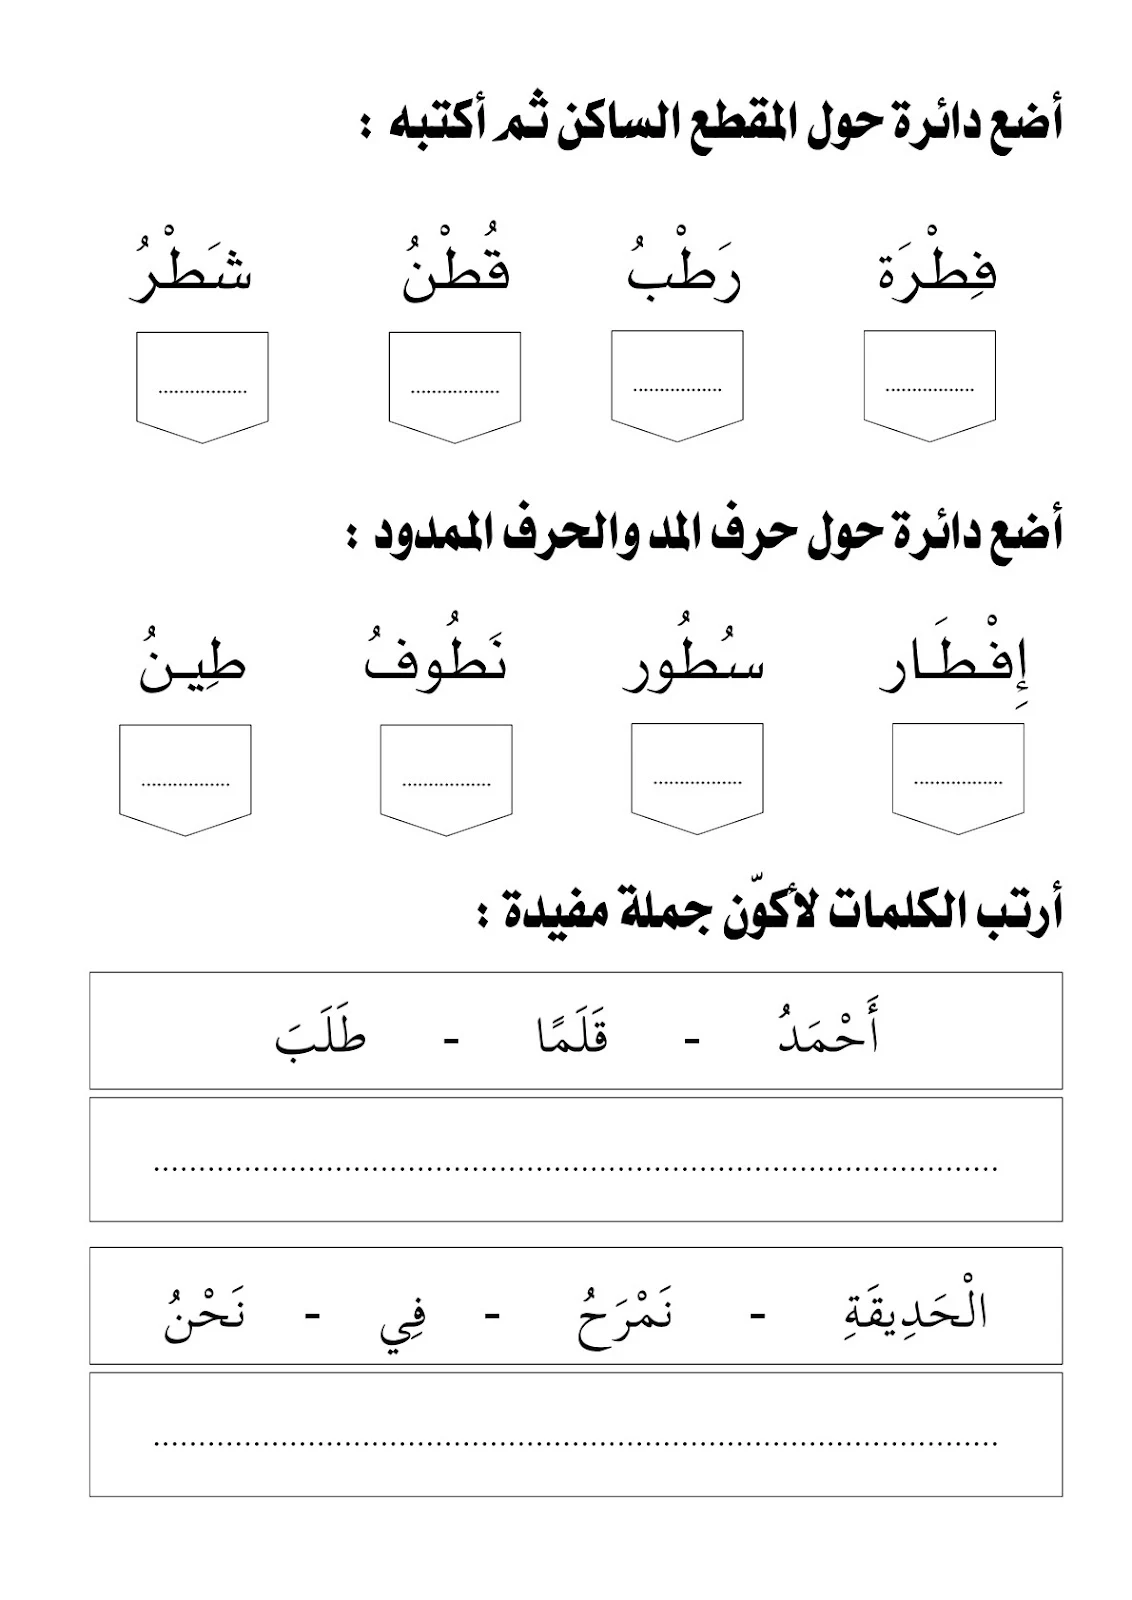 تحميل أوراق عمل لغتي للصف الأول pdf تحميل مباشر